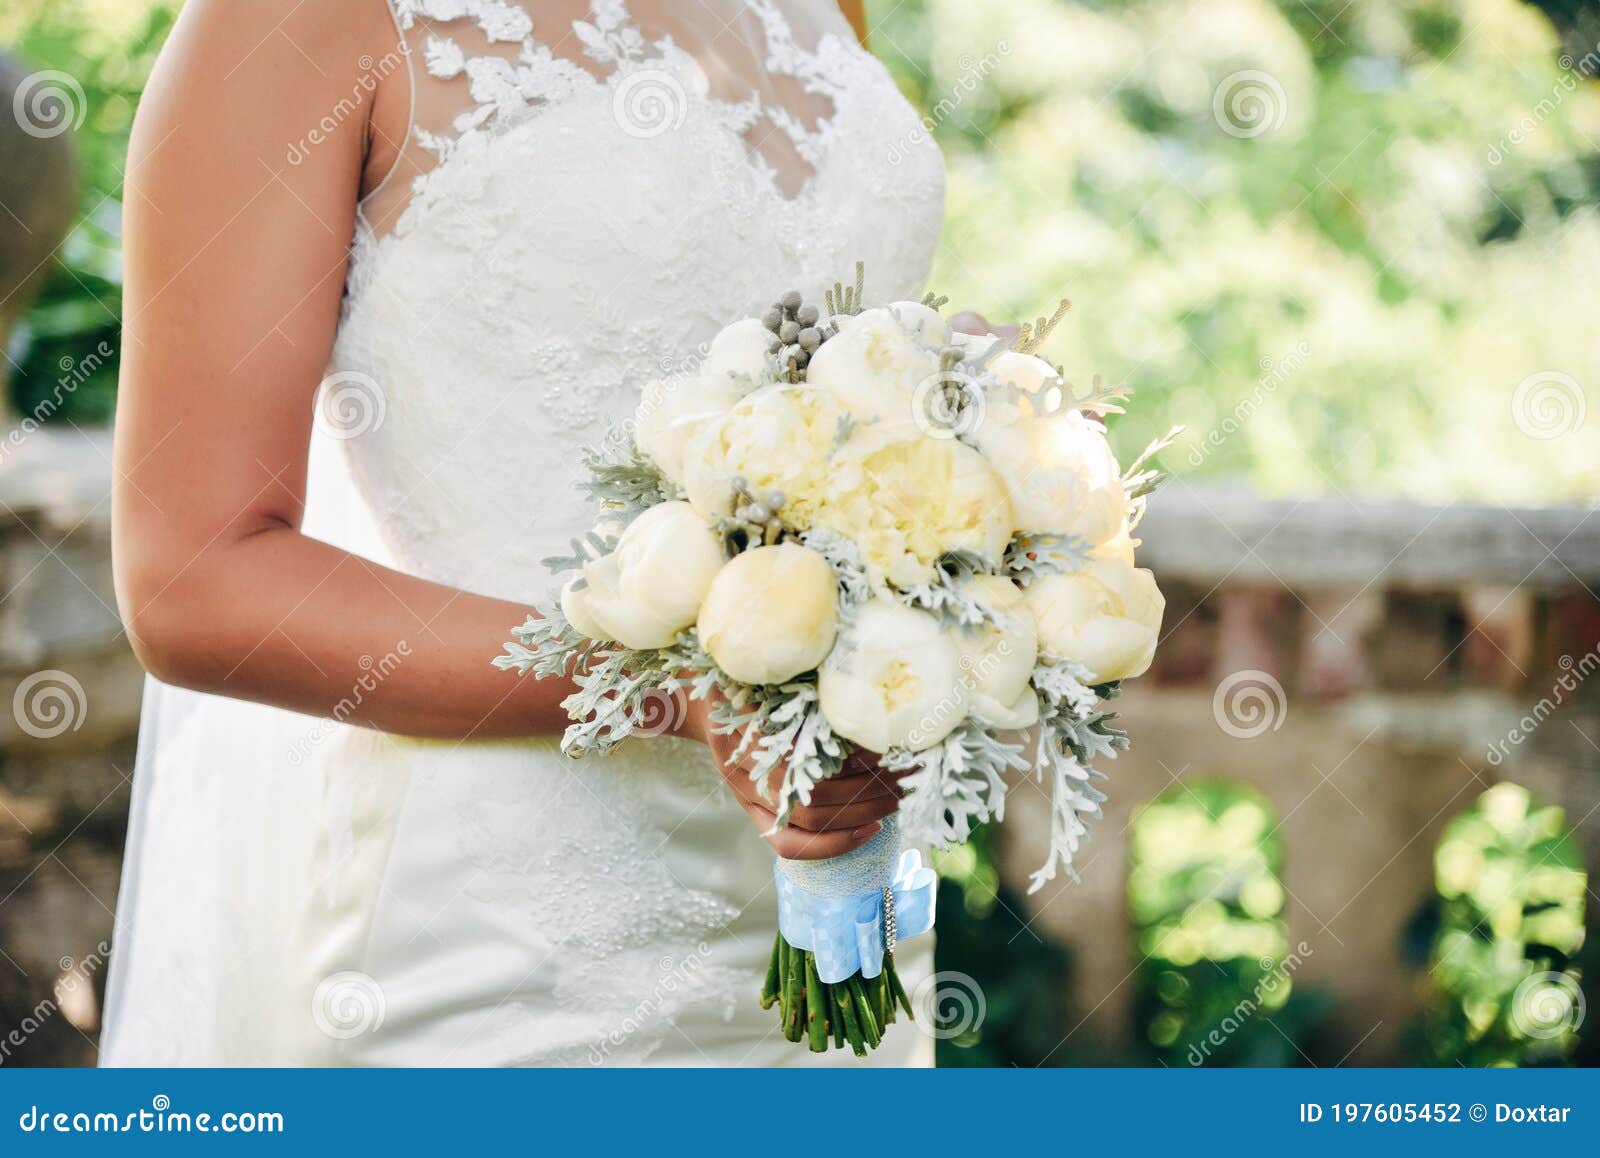 Hand bouquet wedding